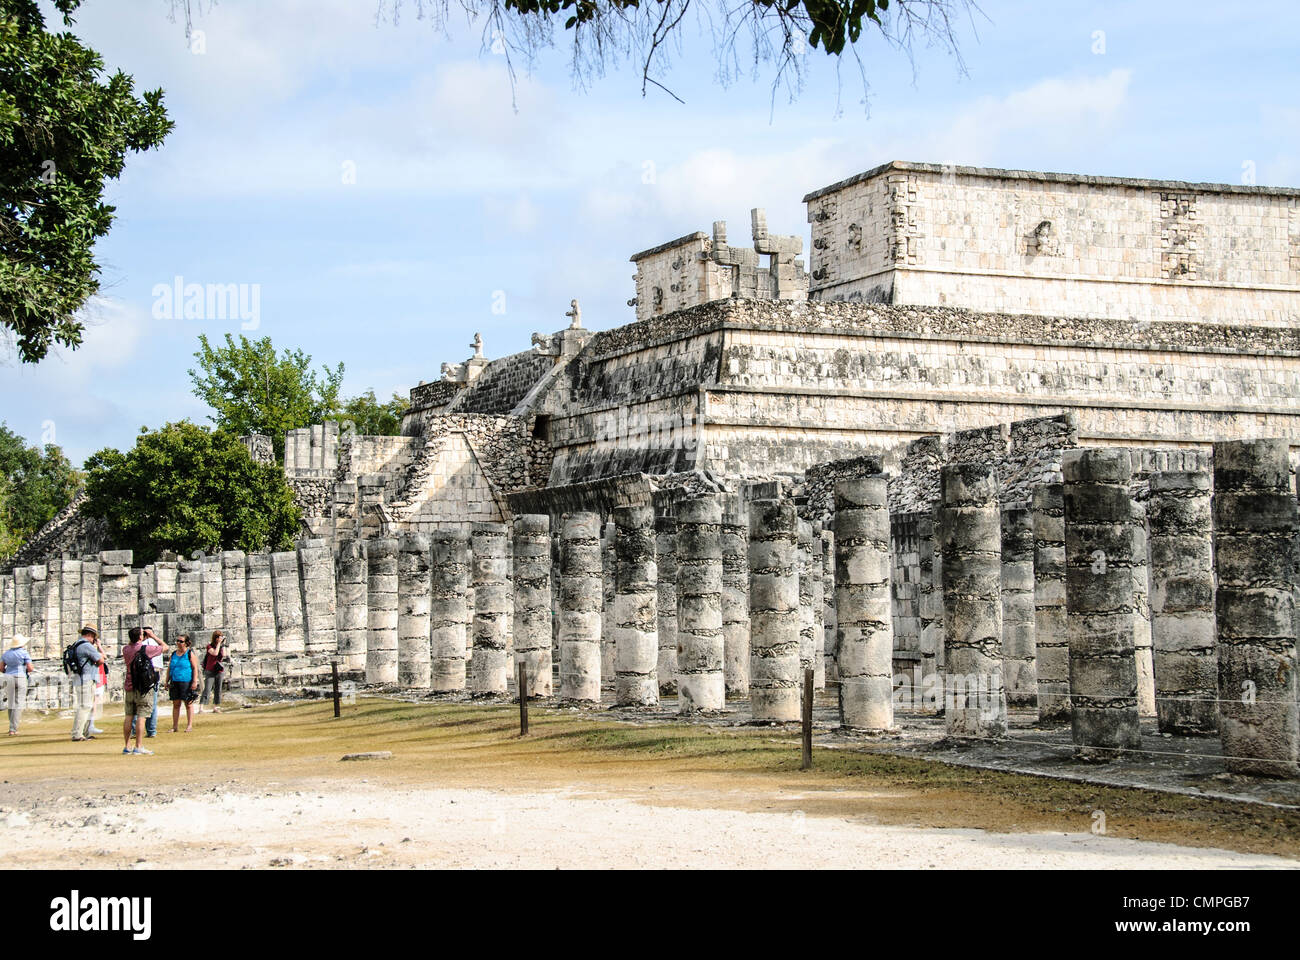 CHICHEN ITZA, Mexique - Le Temple des Guerriers à Chichén Itzá, un site maya précolombienne du Mexique sur la péninsule du Yucatan. Banque D'Images